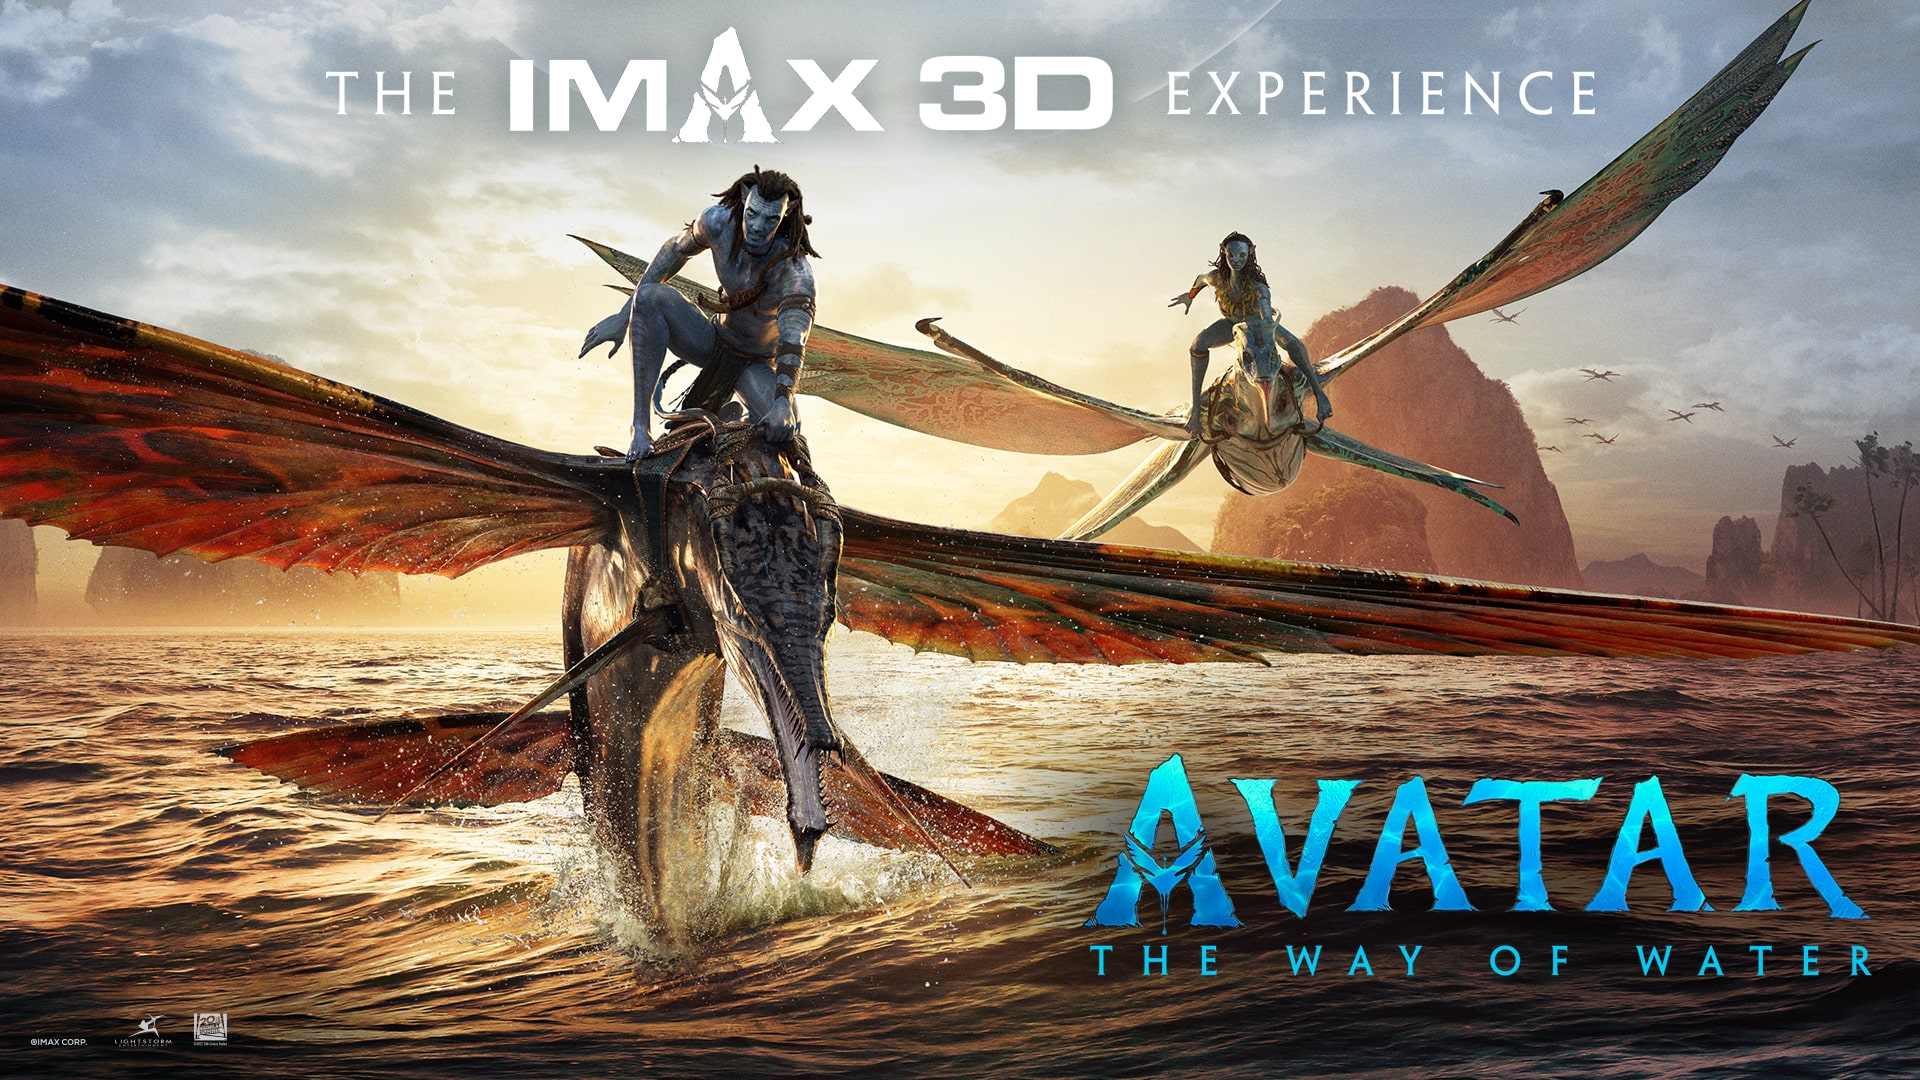 Avatar: Lấy bối cảnh trên hành tinh lạ, bộ phim Avatar với những cảnh quay đẹp mắt và kỹ xảo sống động đã trở thành tác phẩm đỉnh cao của điện ảnh. Năm 2024, hãy đến CGV để xem Avatar bản IMAX 3D, một trải nghiệm thú vị sẽ đưa bạn chìm đắm vào thế giới tuyệt vời đó.